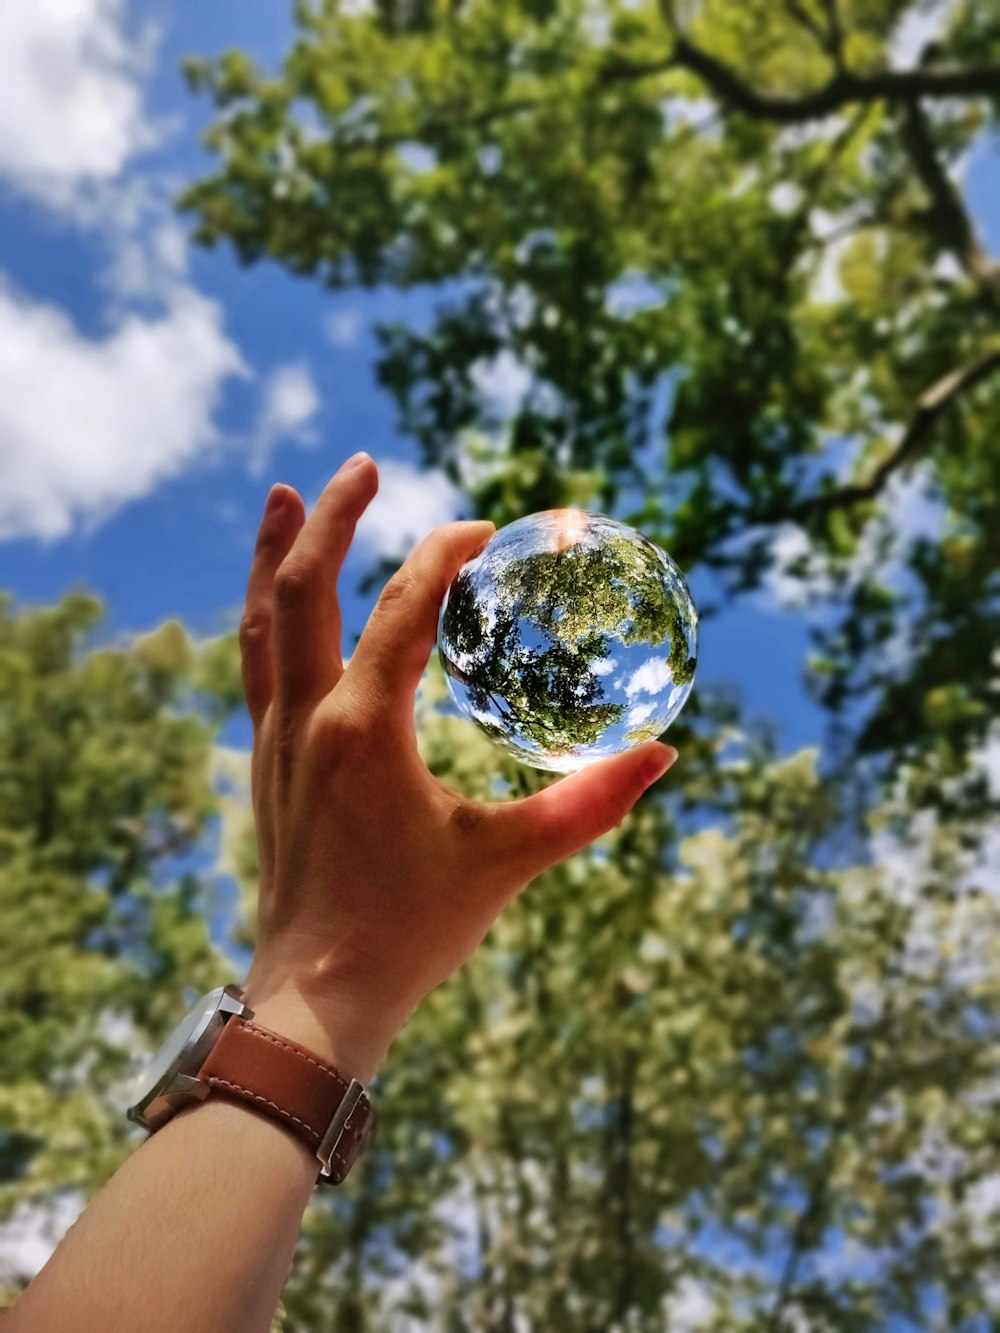 Persona desconocida sosteniendo una bola de vidrio transparente